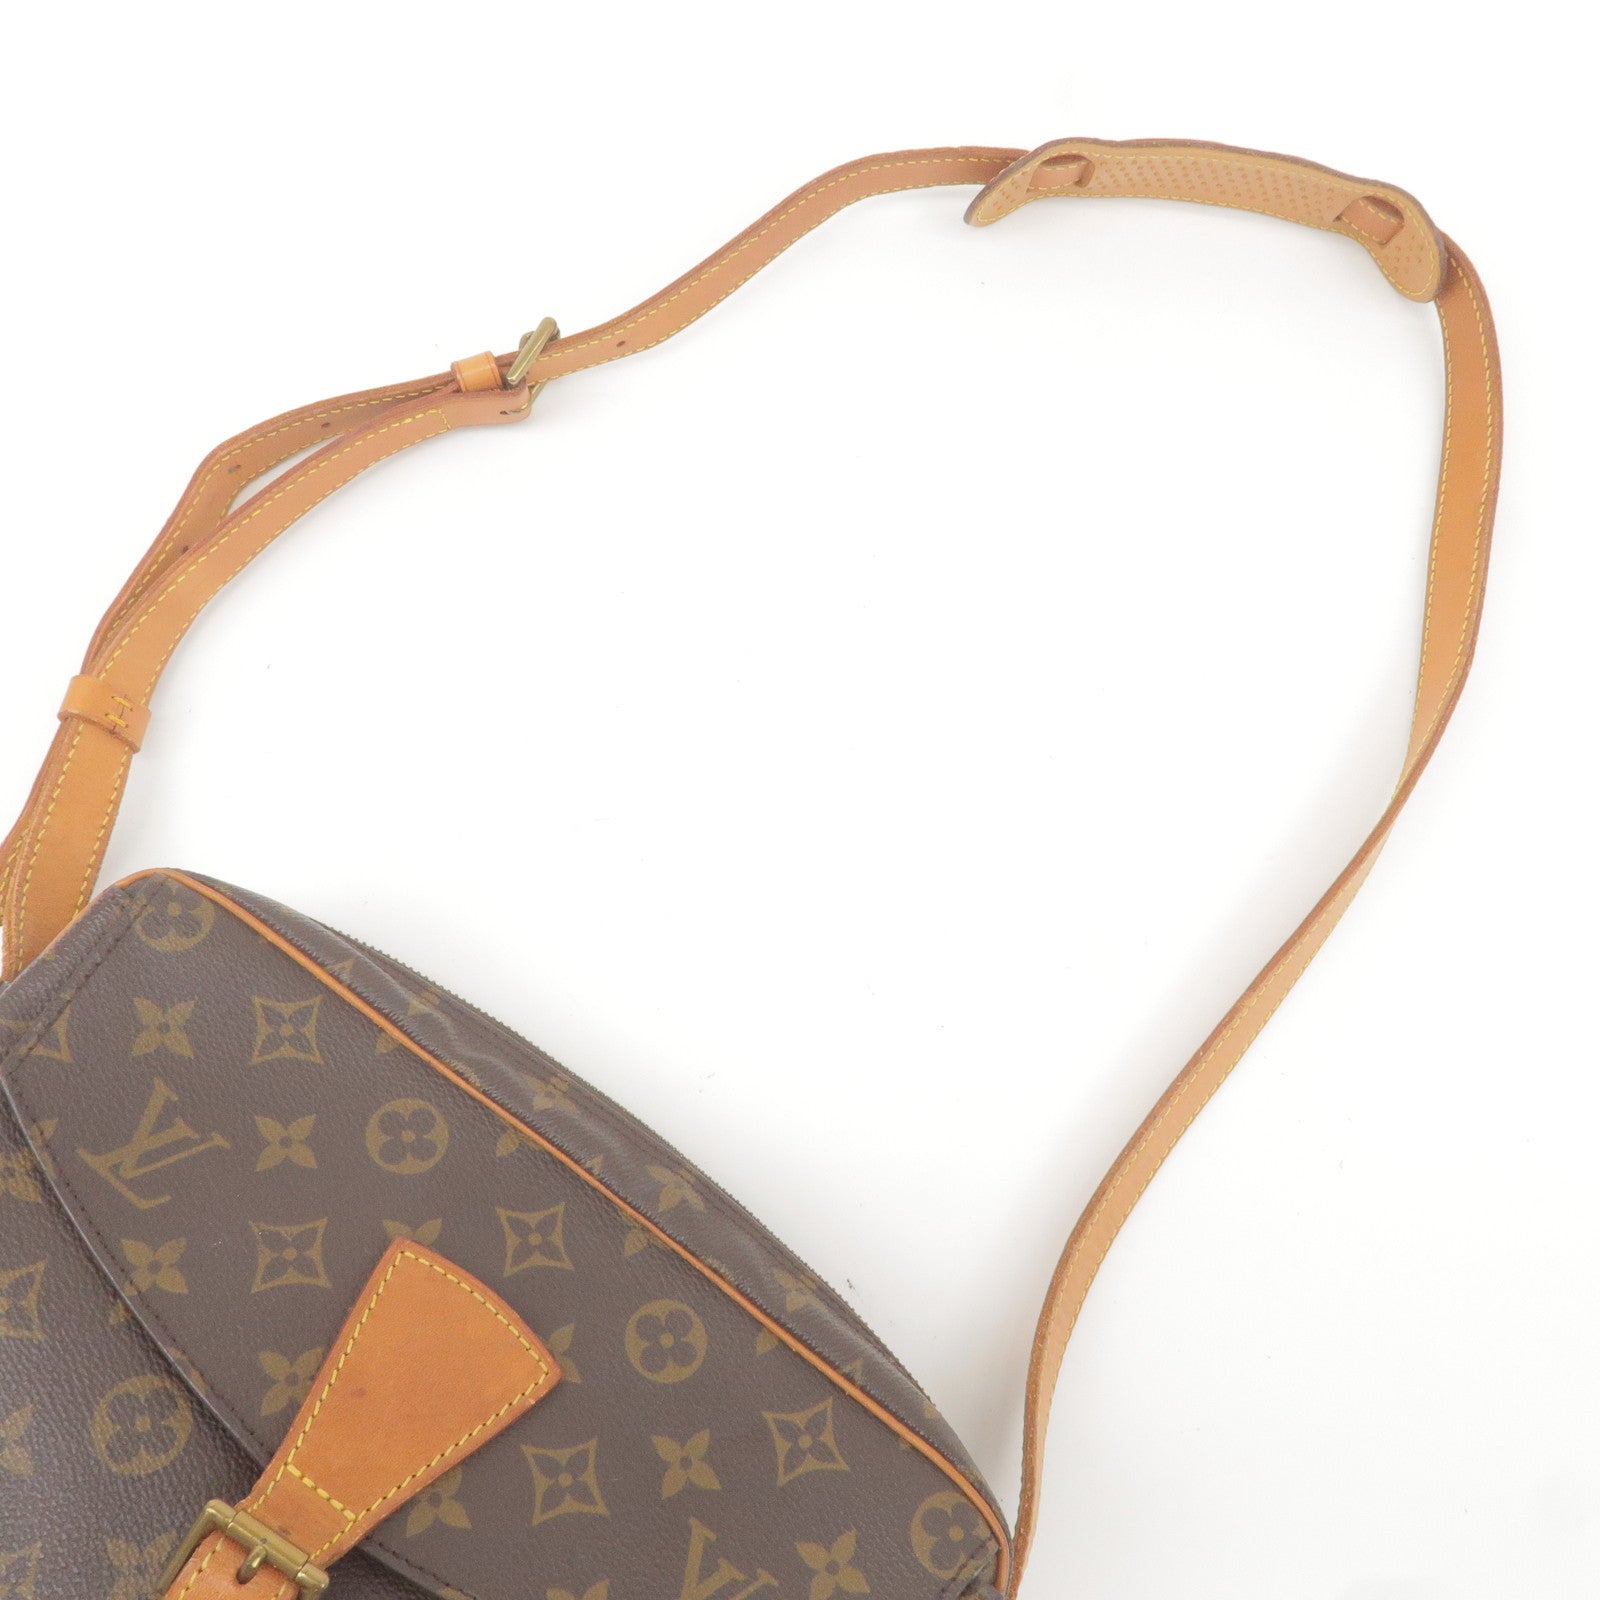 Authentic Louis Vuitton Monogram Jeune Fille GM Shoulder Bag